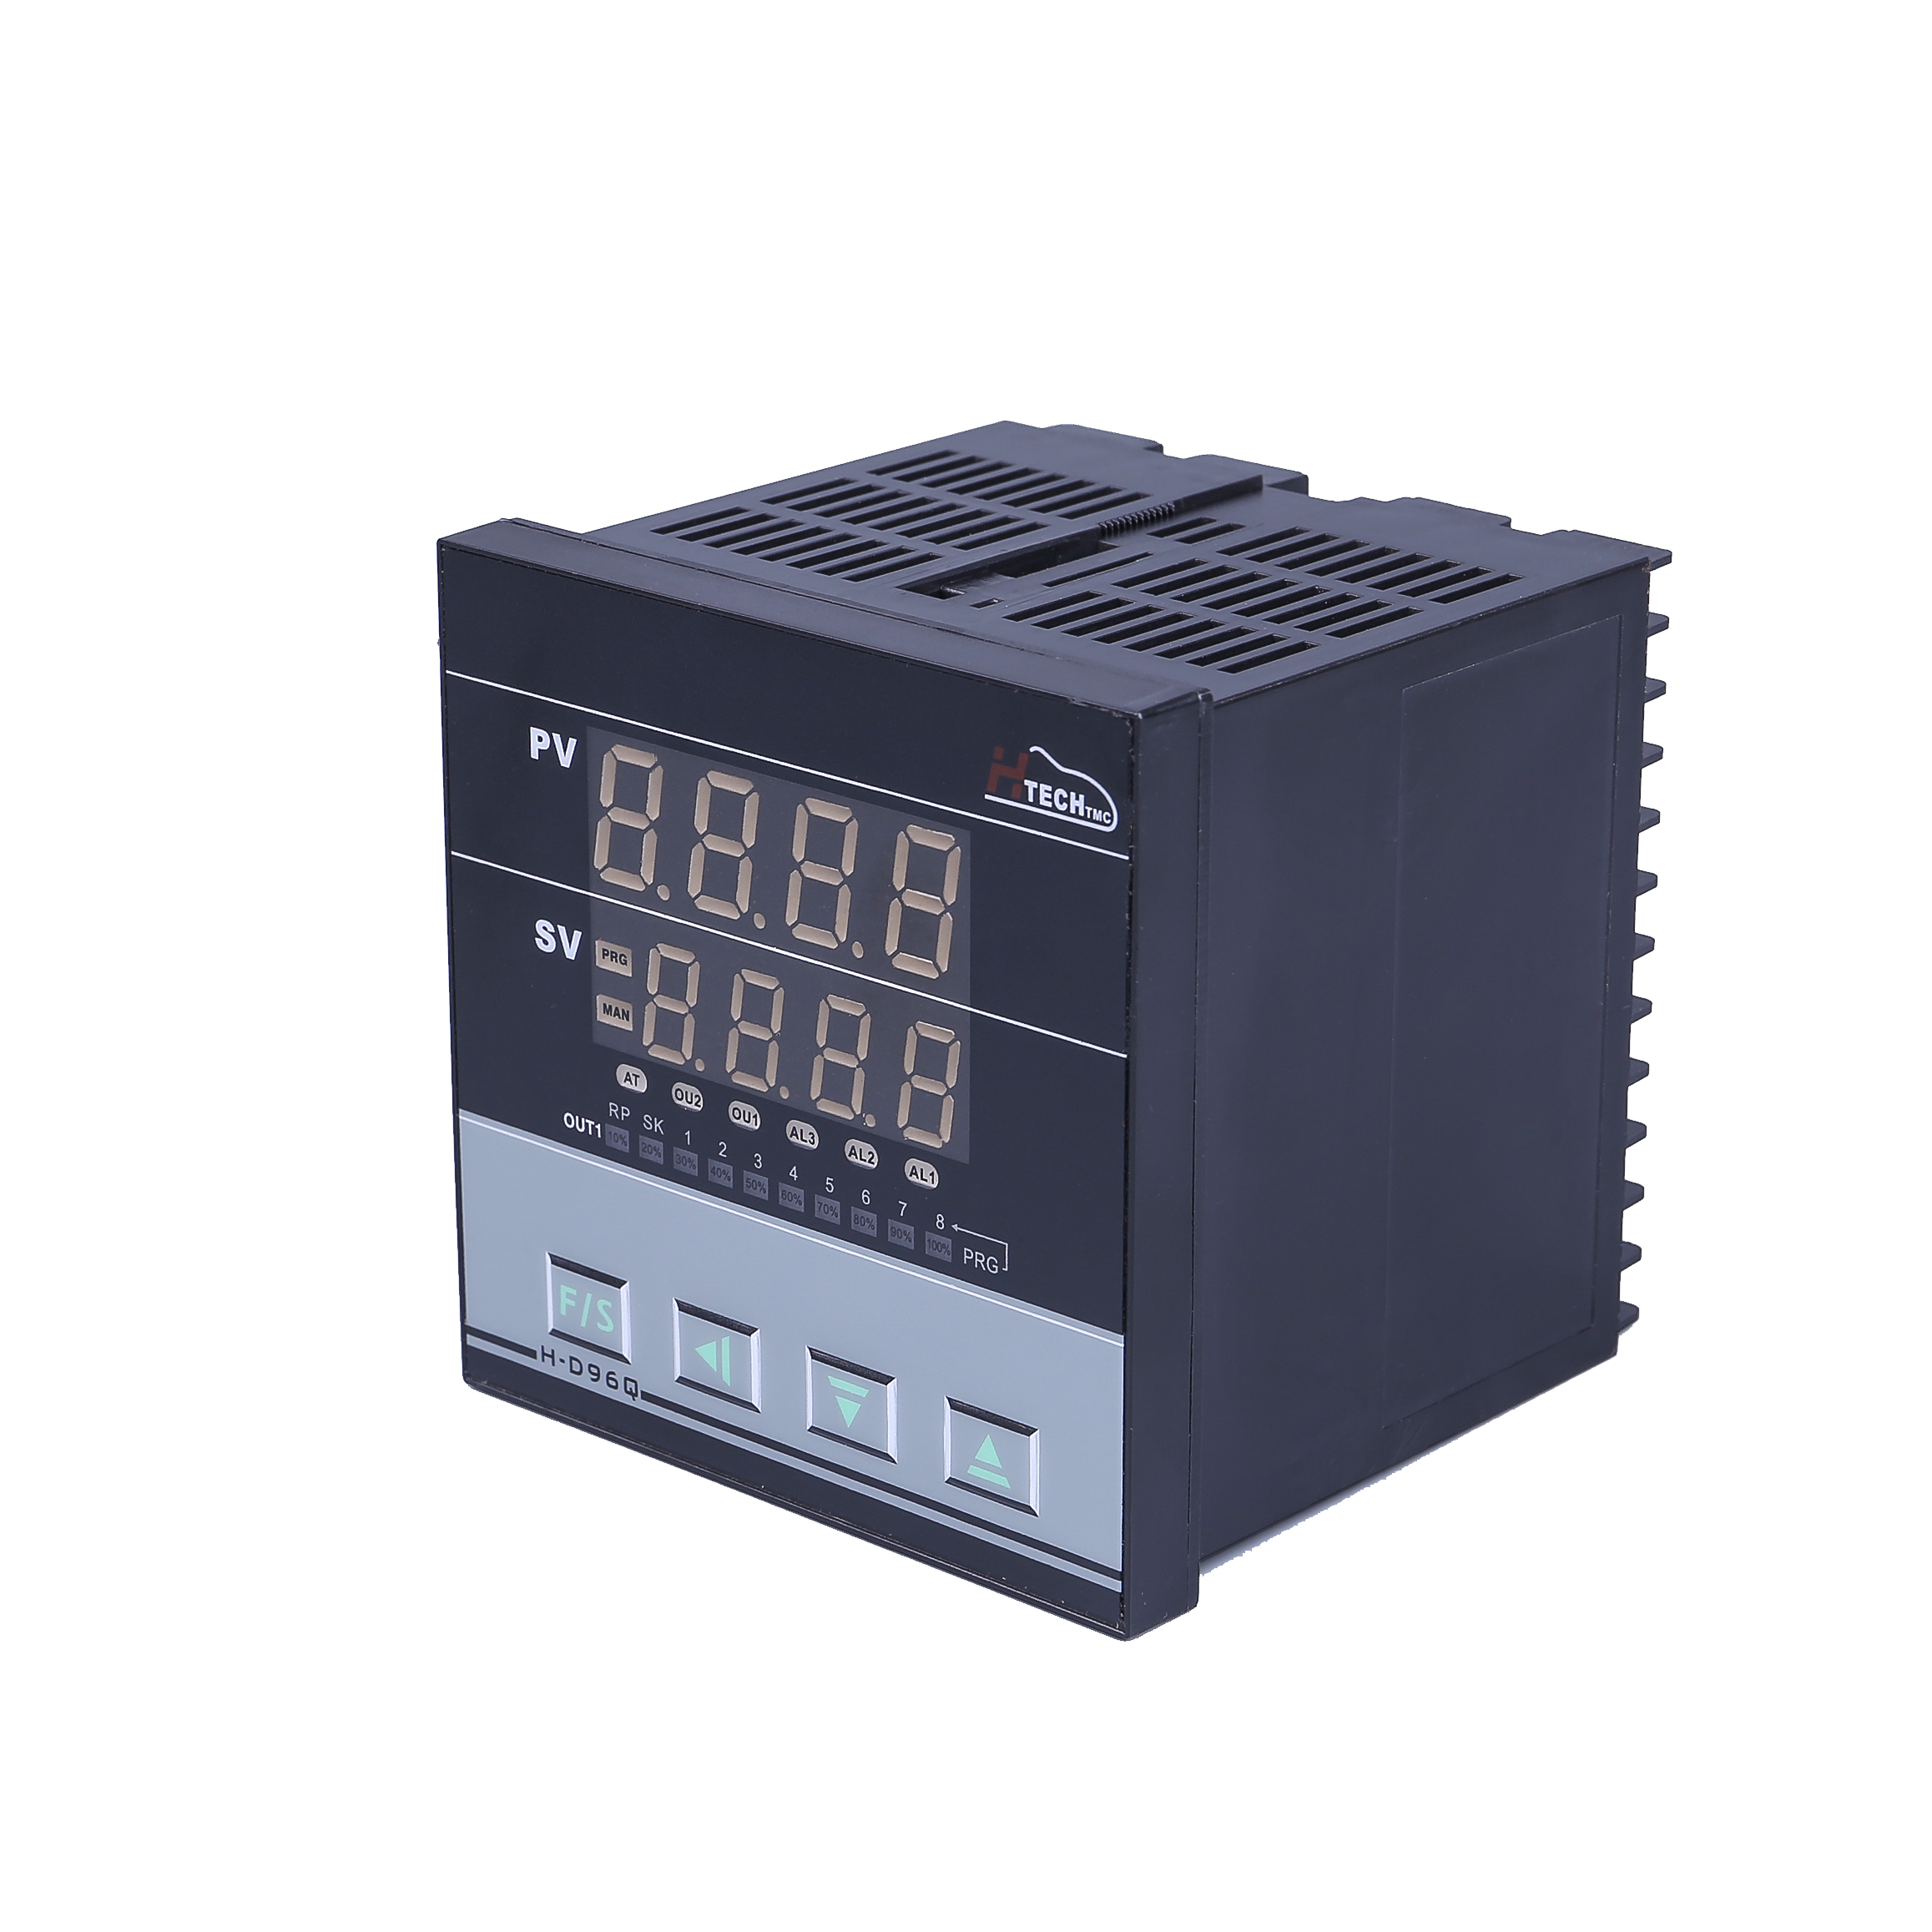 数显式温控器供货商价格,东莞可调式温控器智能价格